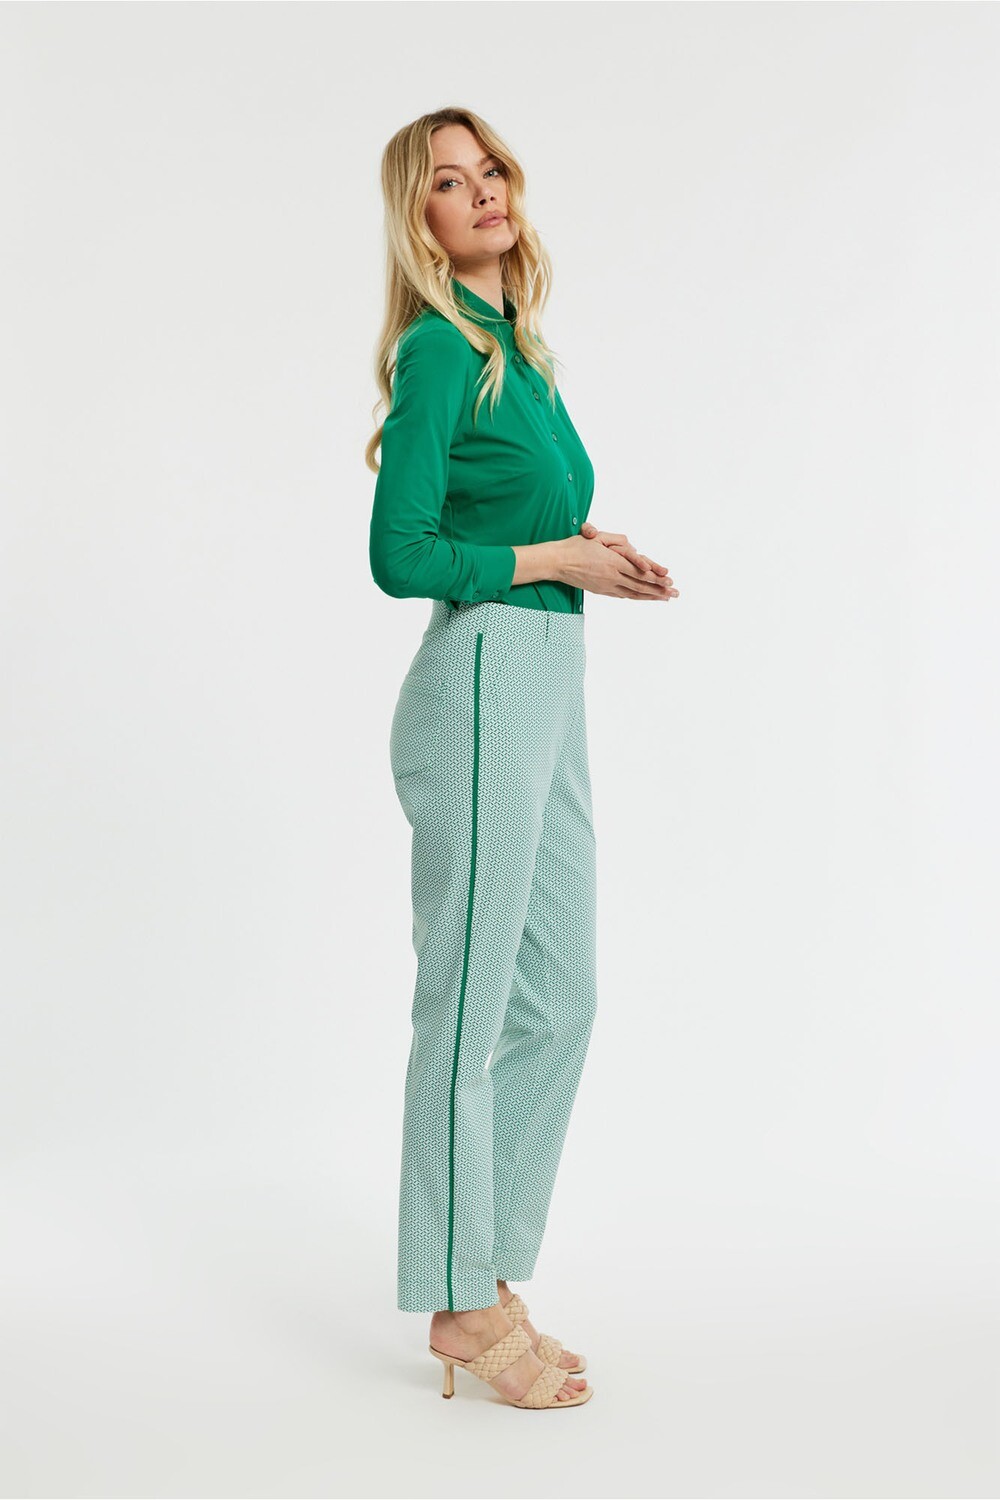 Studio Anneloes Anke maze trousers, groen, Size: XS